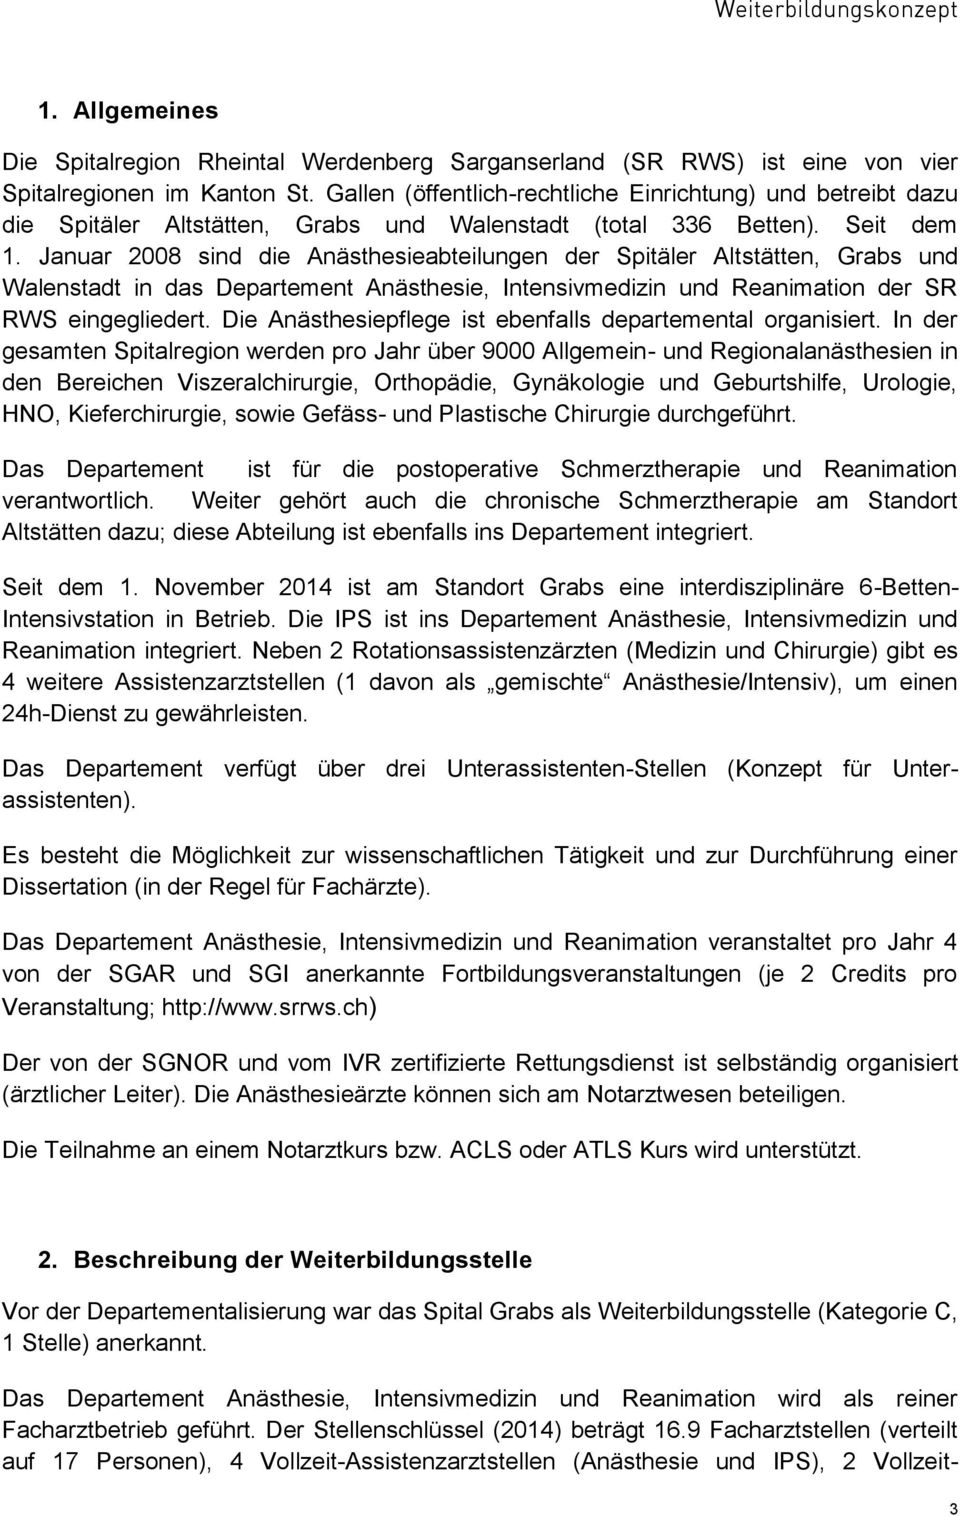 Januar 2008 sind die Anästhesieabteilungen der Spitäler Altstätten, Grabs und Walenstadt in das Departement Anästhesie, Intensivmedizin und Reanimation der SR RWS eingegliedert.